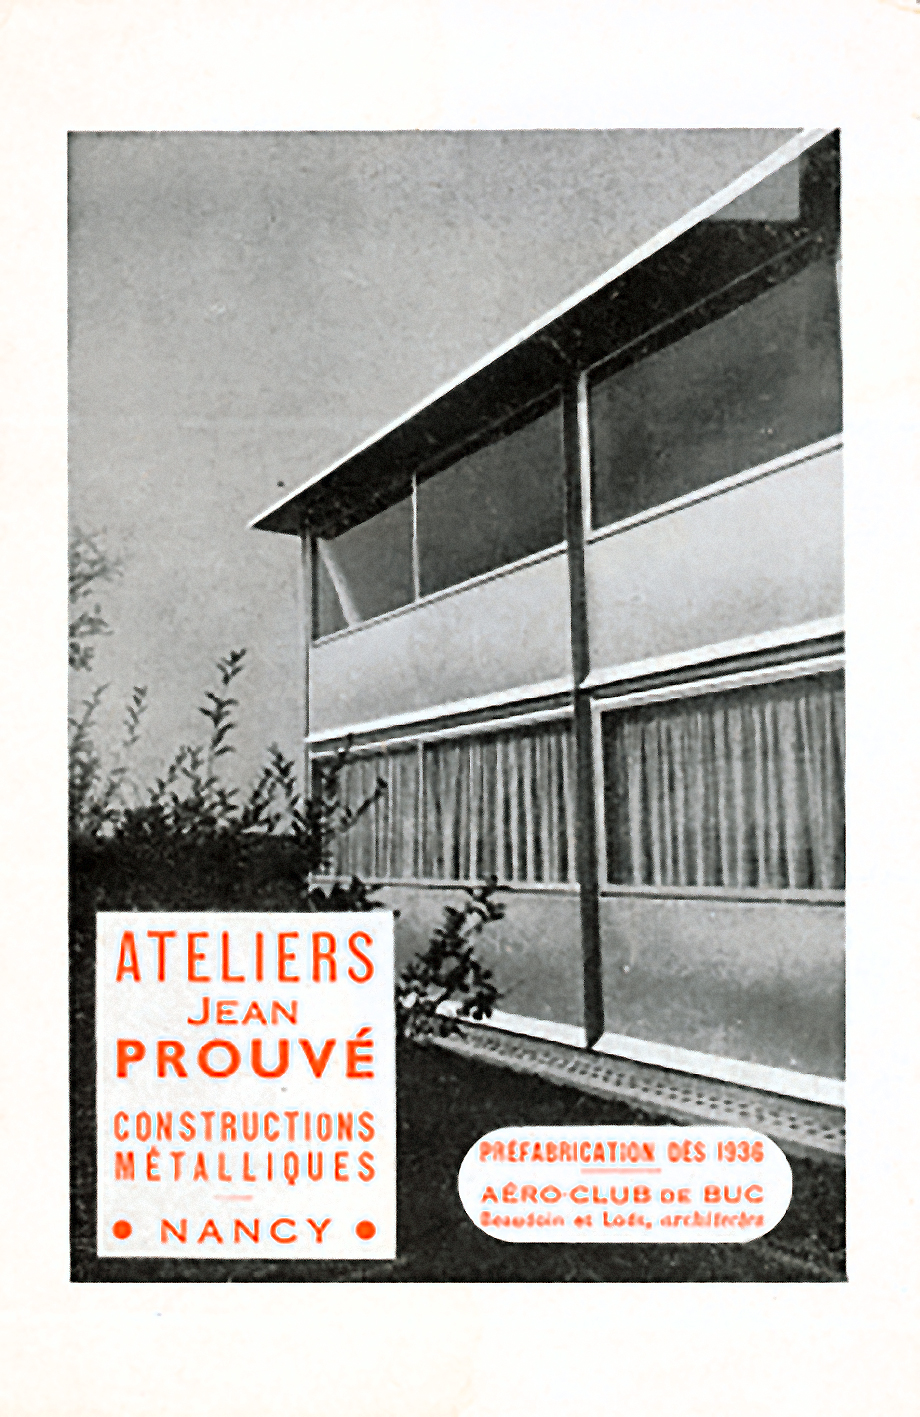 Publicité des Ateliers Jean Prouvé, <i>L’Architecture d’aujourd’hui,</i> juin-juillet 1944.